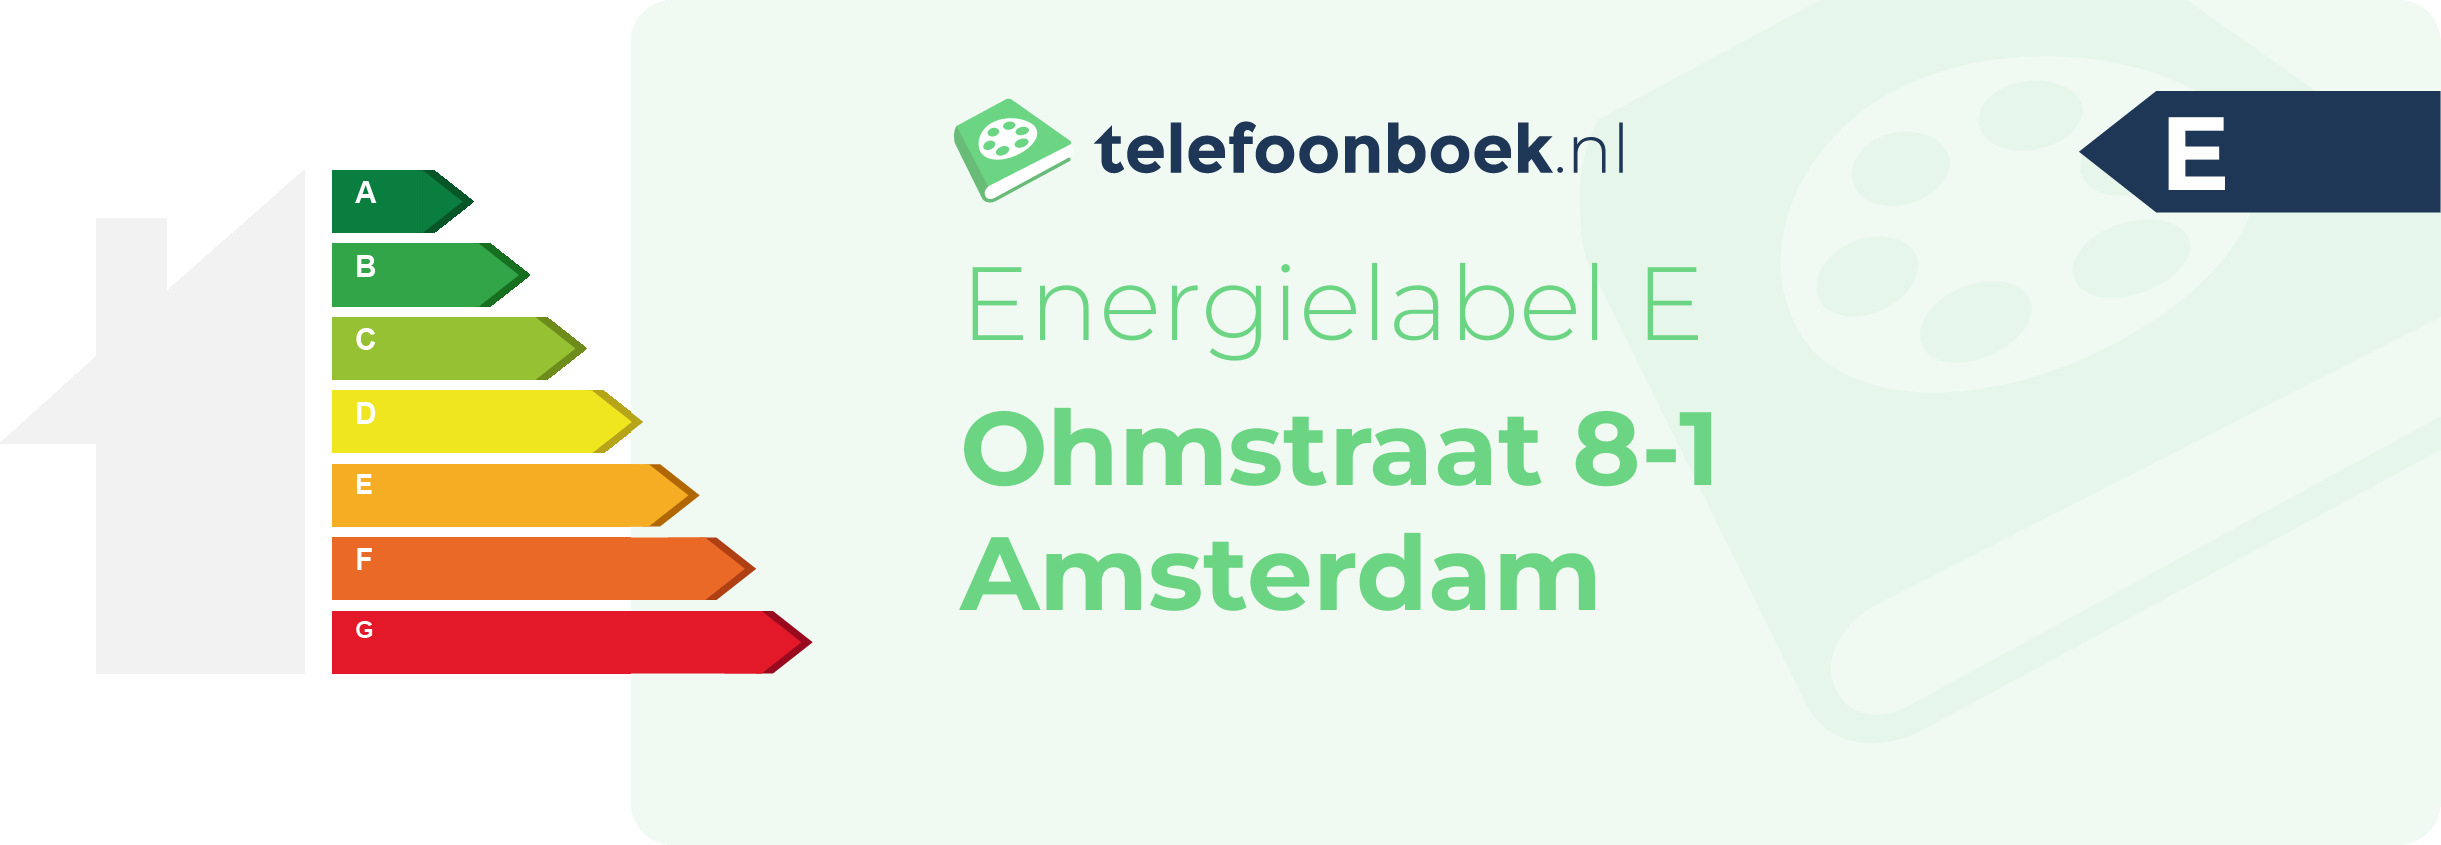 Energielabel Ohmstraat 8-1 Amsterdam